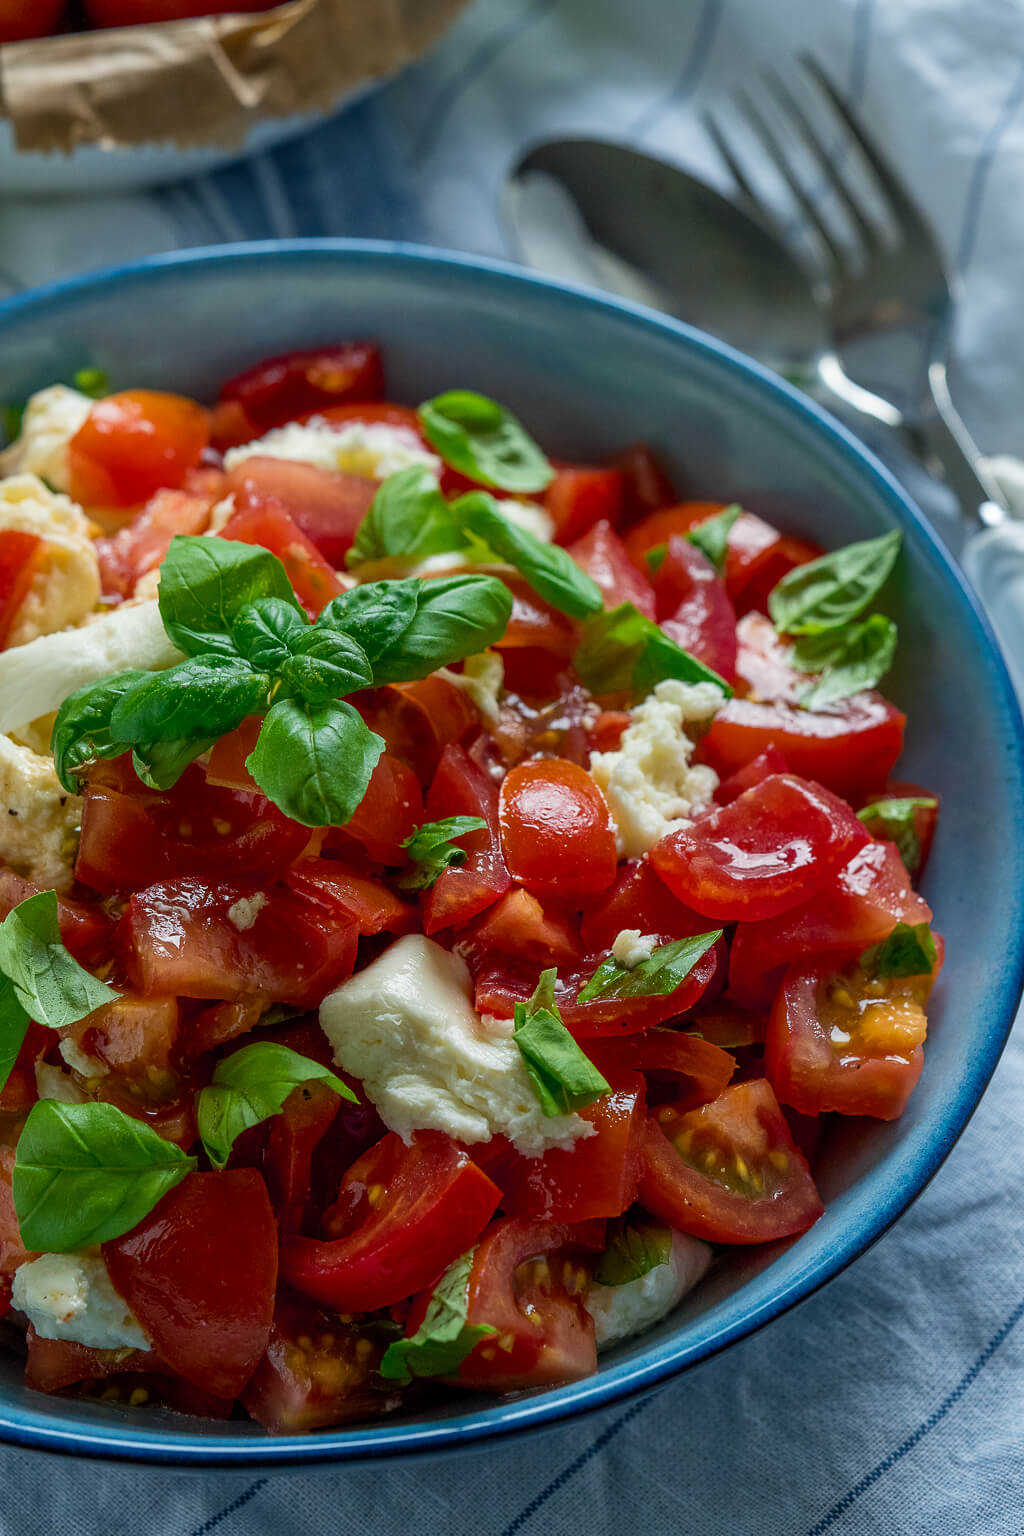 Einfacher Tomatensalat mit Balsamico Dressing - mega lecker - Einfach ...